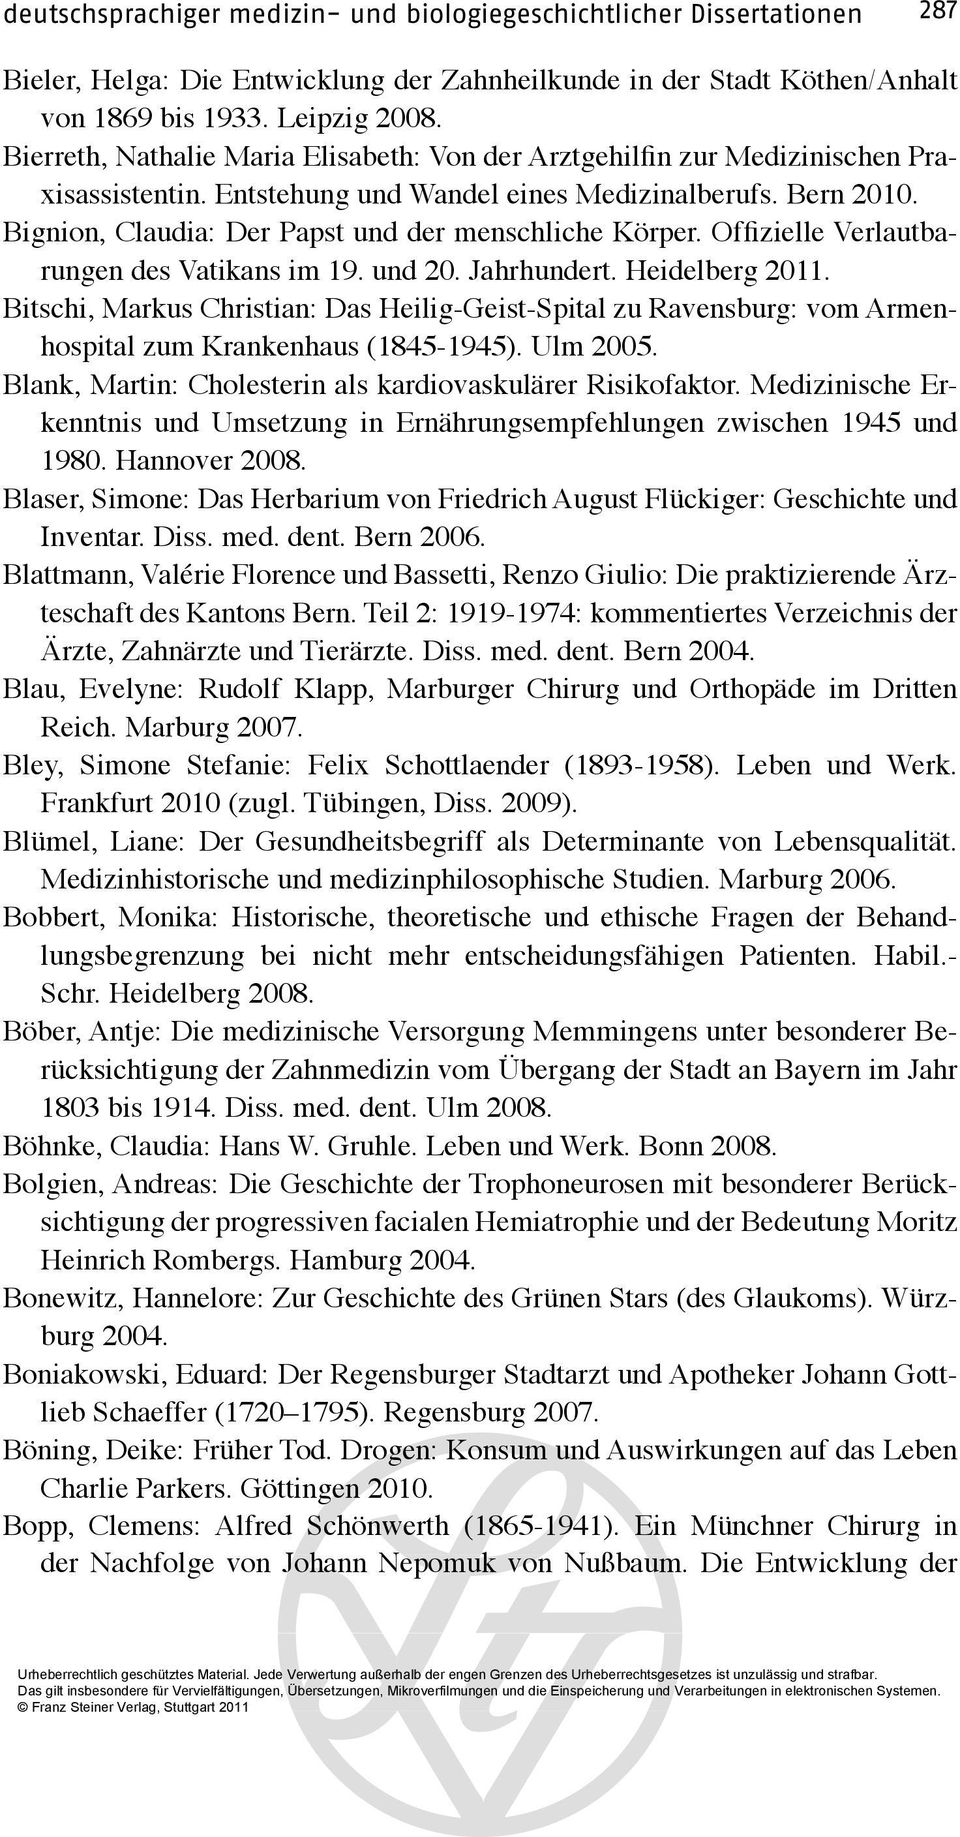 Bignion, Claudia: Der Papst und der menschliche Körper. Offizielle Verlautbarungen des Vatikans im 19. und 20. Jahrhundert. Heidelberg 2011.